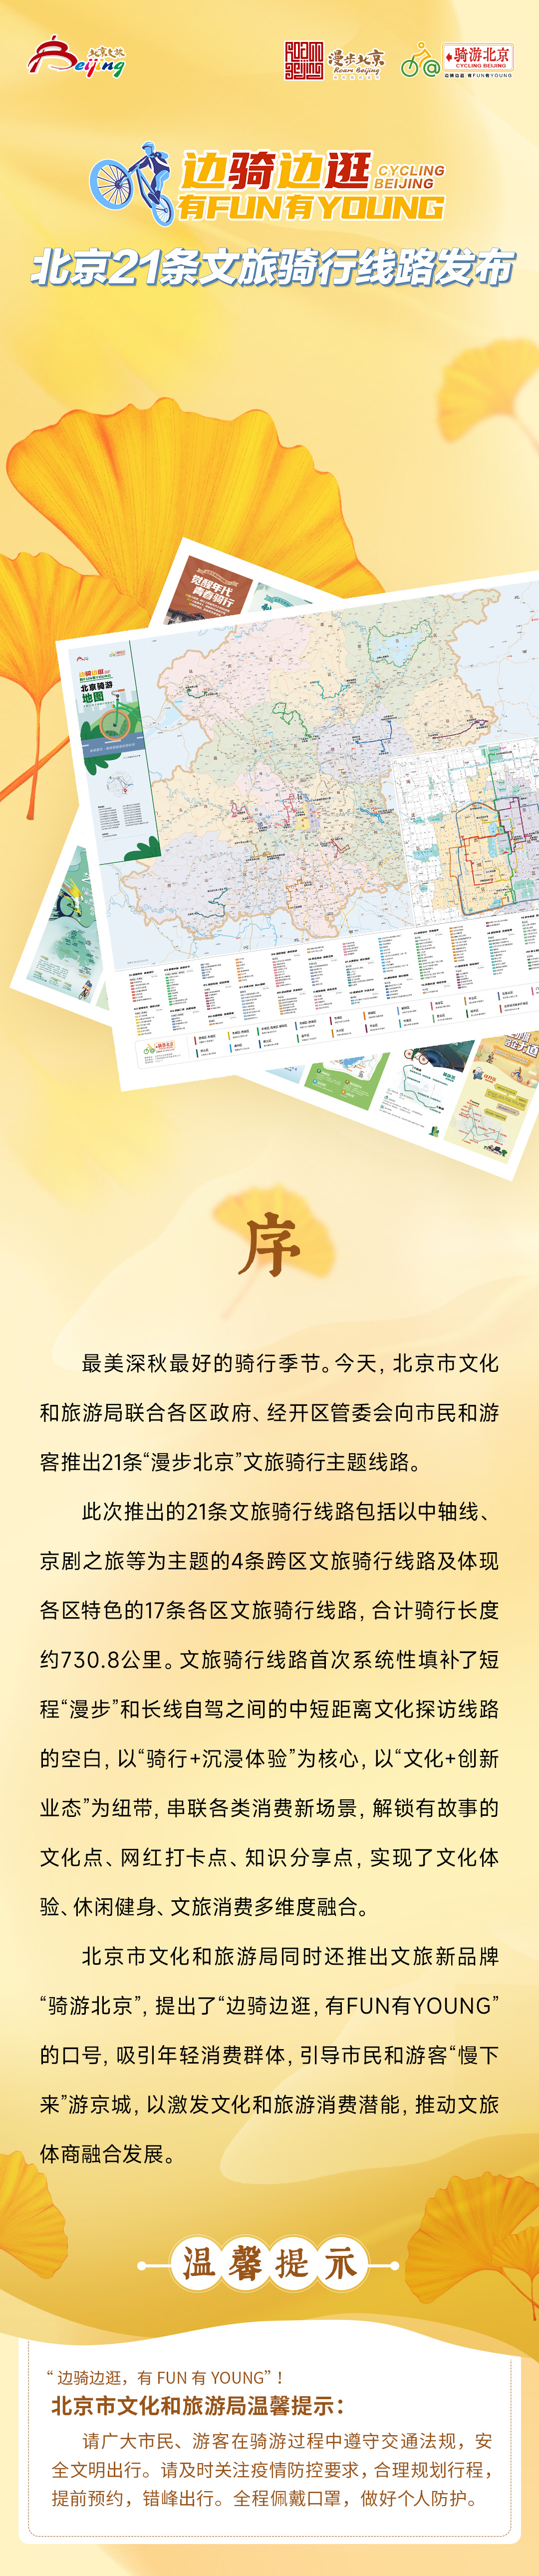 北京市文化和旅遊局組織開展2022文旅開放單位服務質量提升線上培訓活動 - 楠木軒